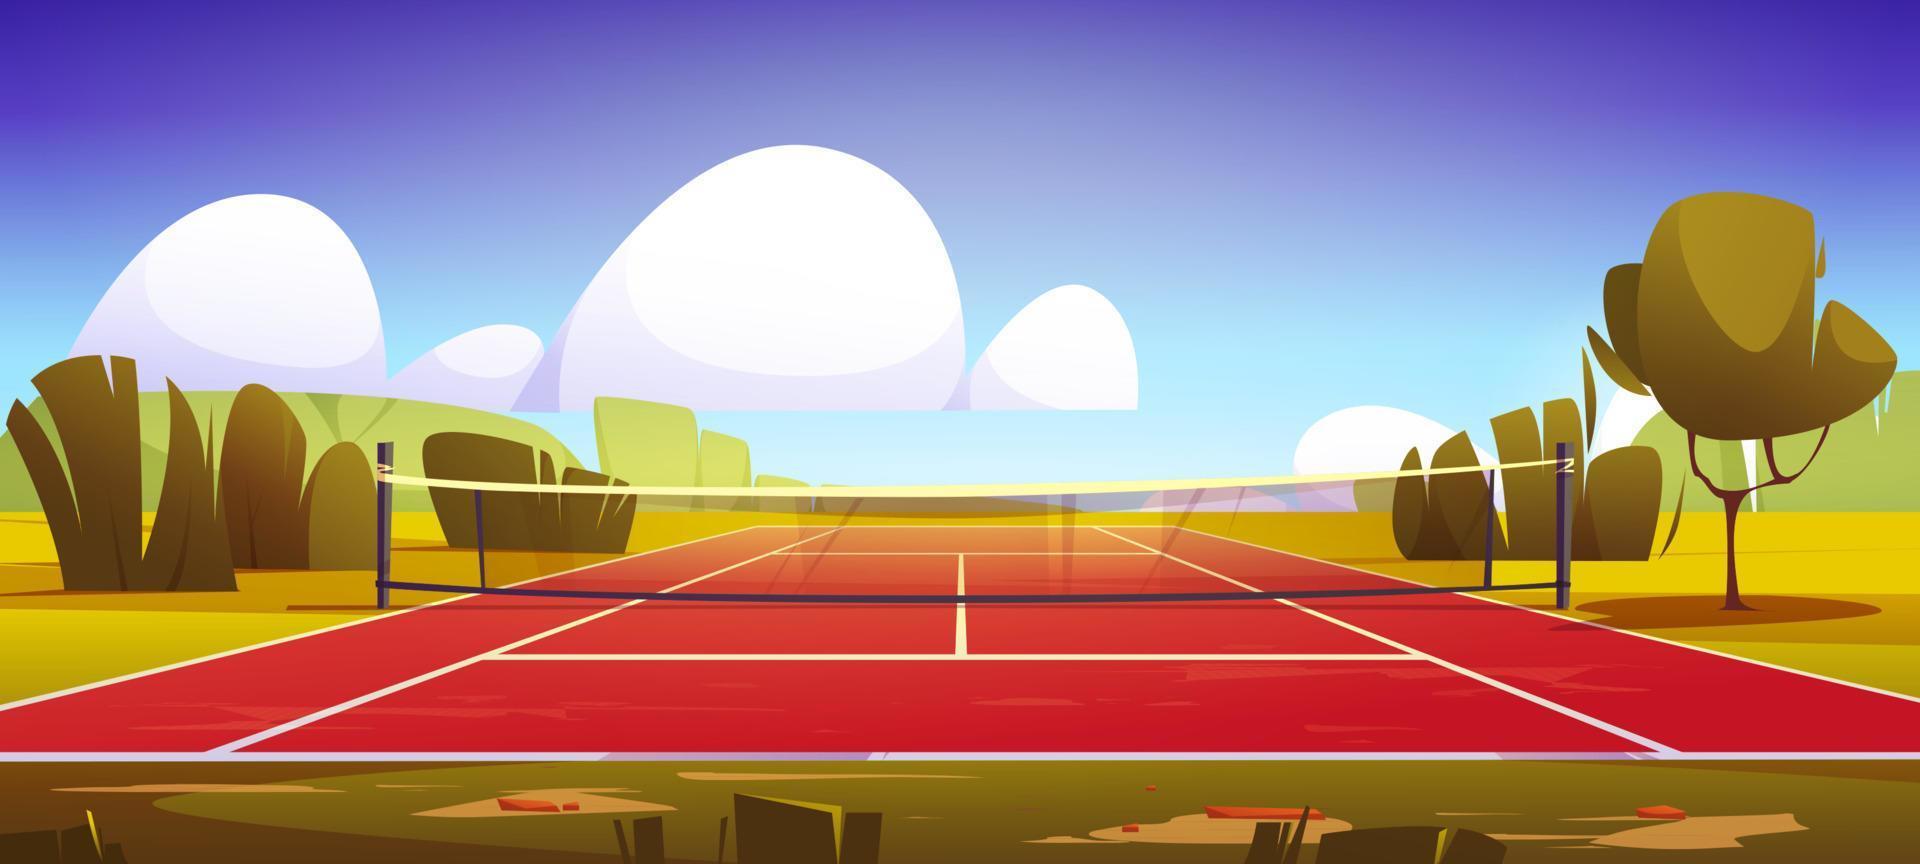 quadra de tênis, campo esportivo com rede no gramado verde vetor